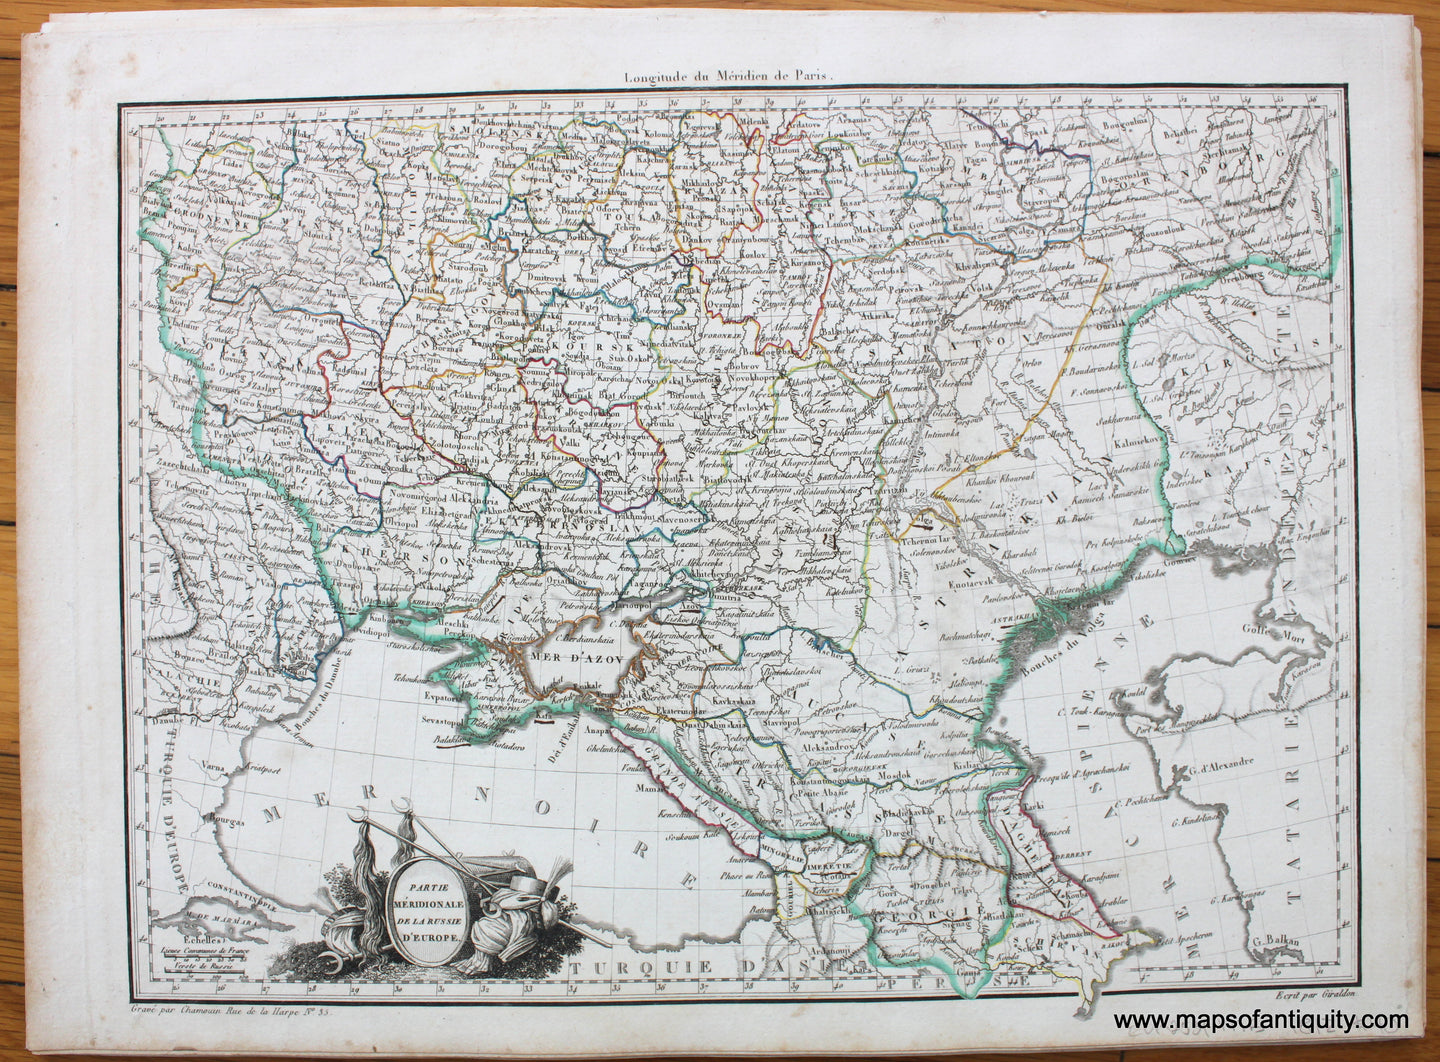 Antique-Hand-Colored-Map-Partie-Meridionale-de-la-Russie-d'-Europe-1812-Malte-Brun-Lapie-Russia-1800s-19th-century-Maps-of-Antiquity